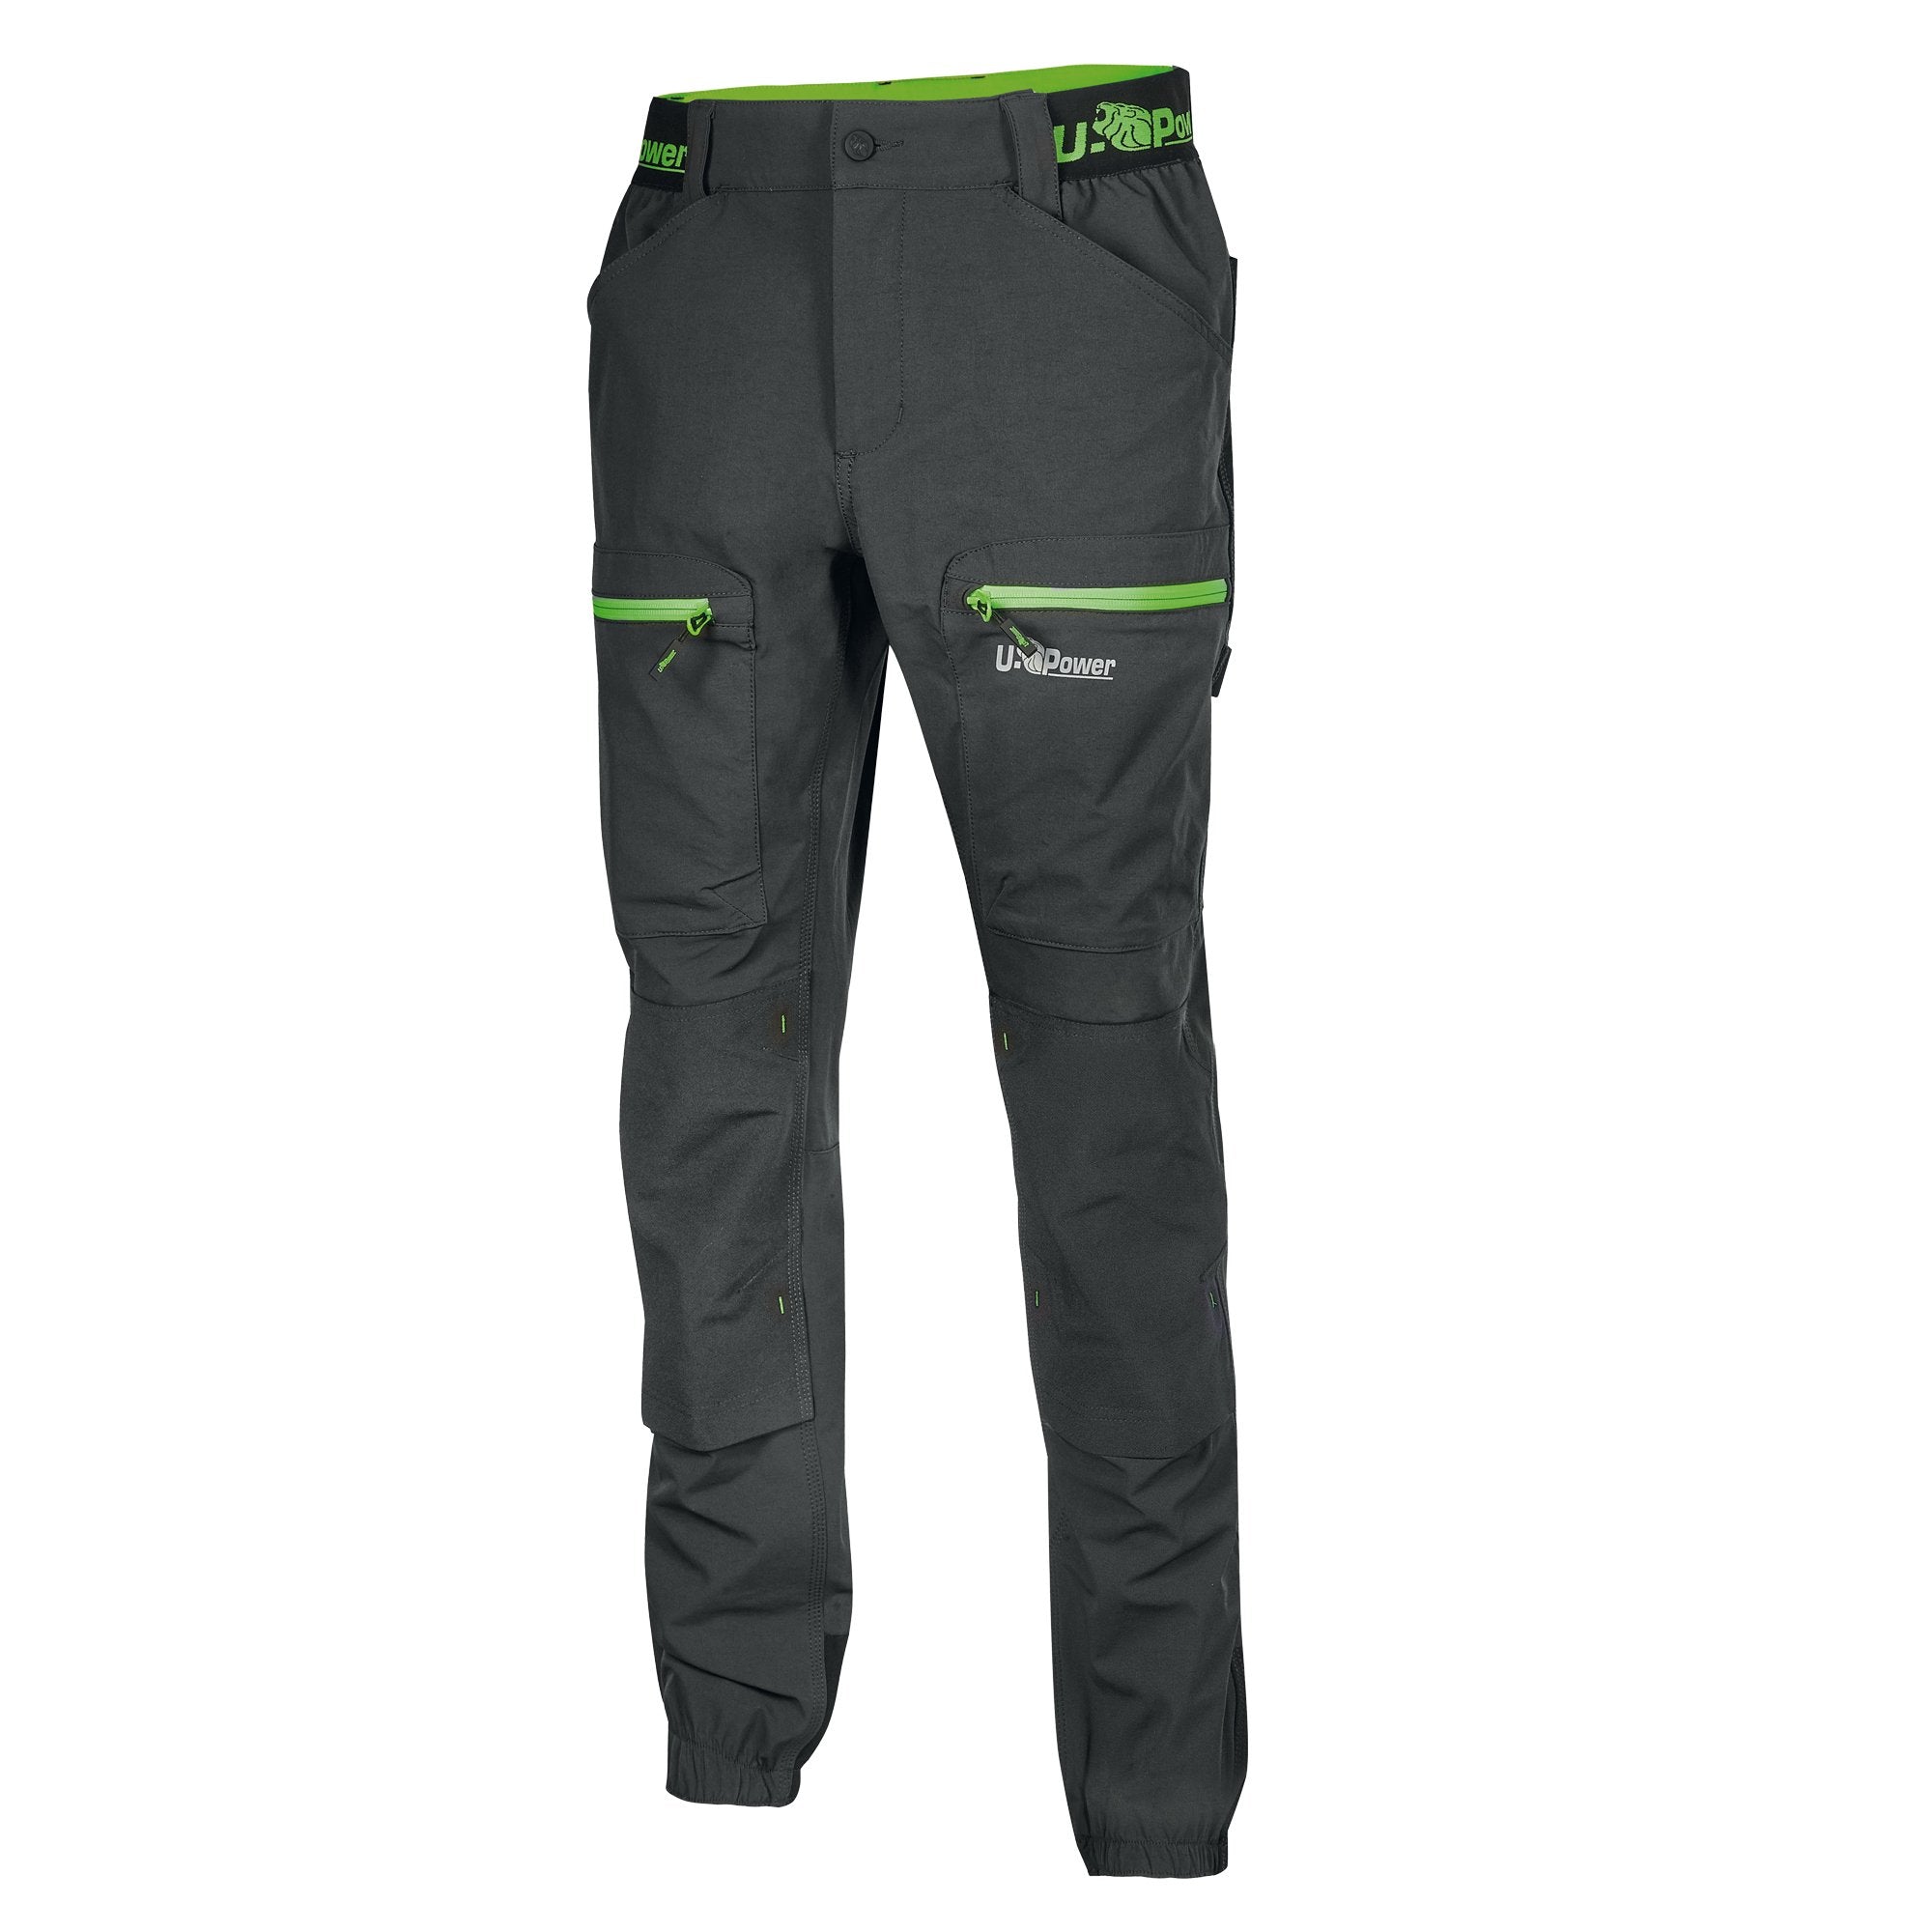 u-power-pantaloni-lavoro-harmony-taglia-xxl-grigio-verde